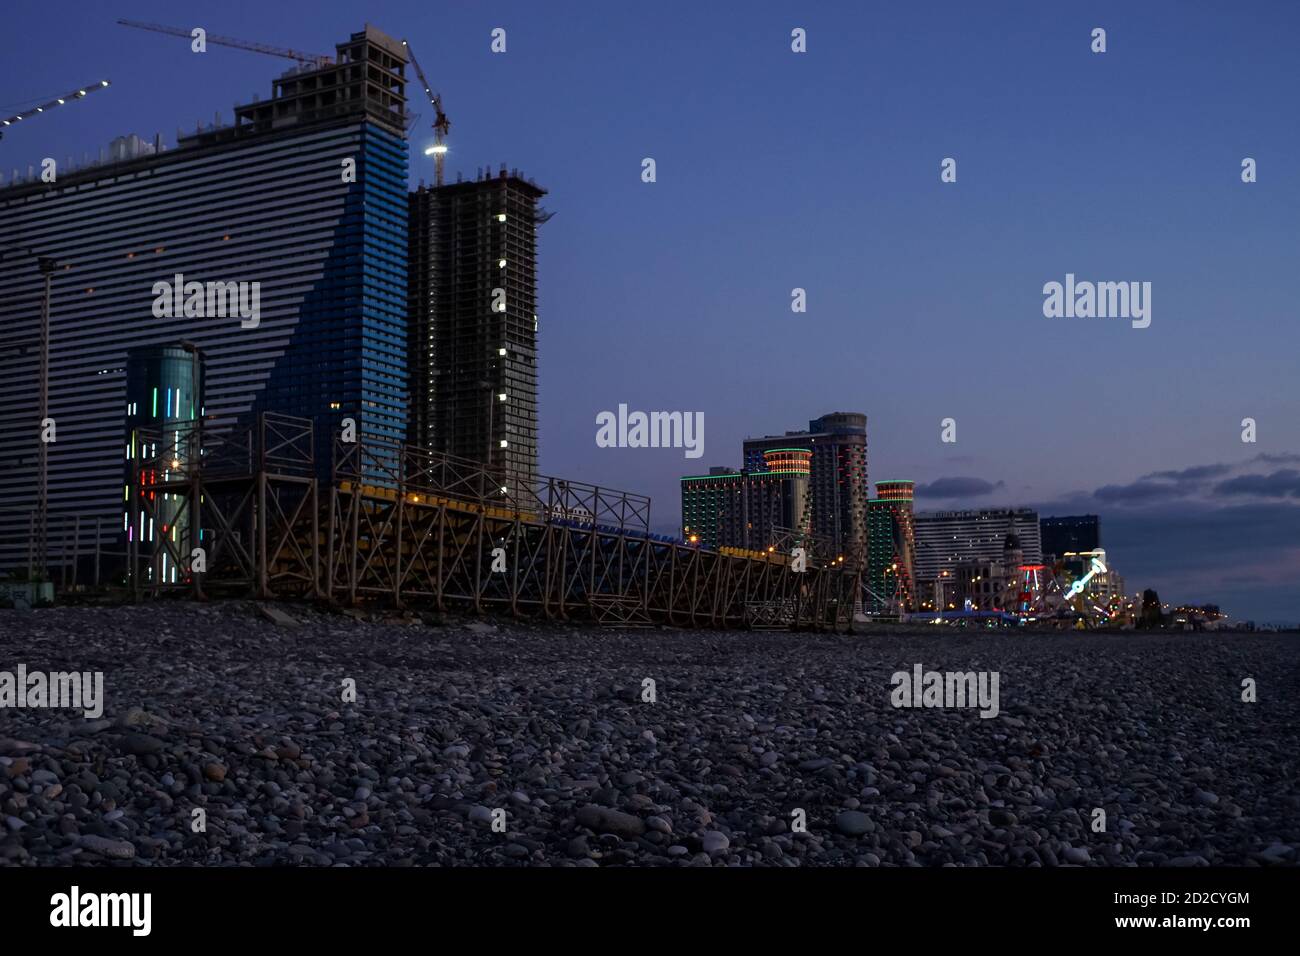 Wohnhochhäuser und Hotels an der Schwarzmeerküste bei Nachtbeleuchtung. Belichtete Urlaubsstadt am Abend, Batumi, Georgia Foto Stock